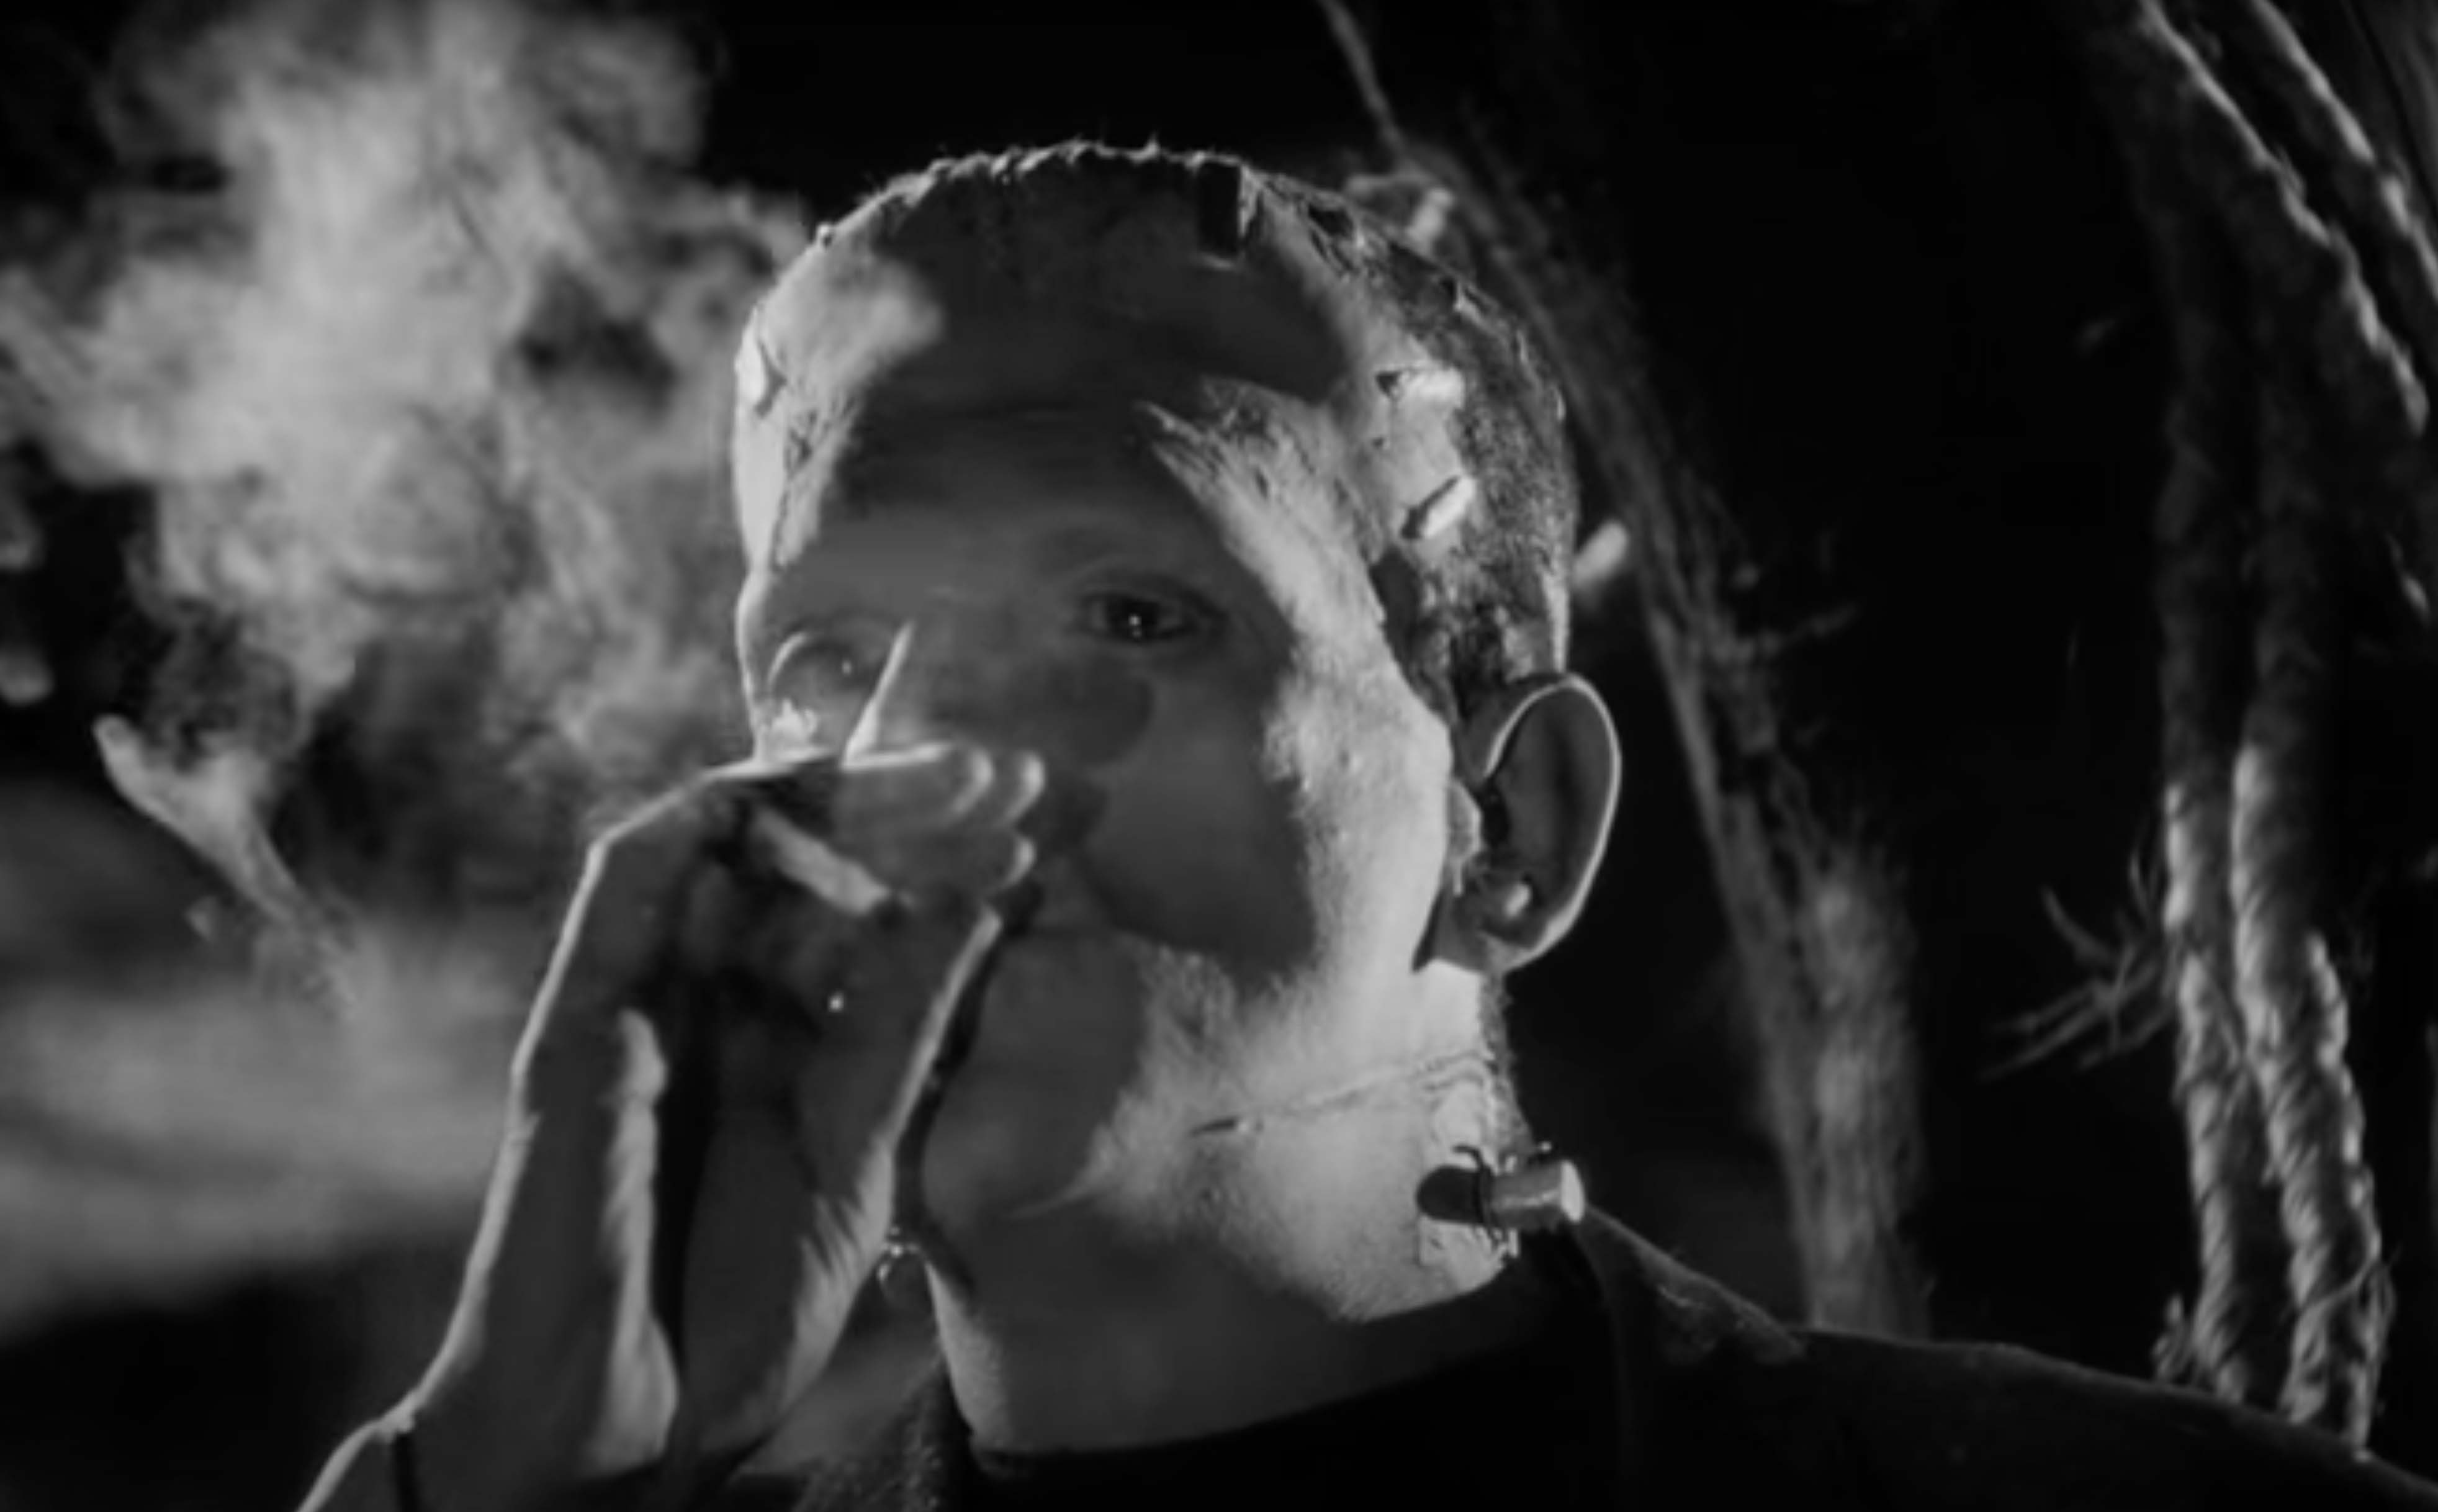 Frankenstein's Monster Smoking Weed in The Bride of Frankenstein